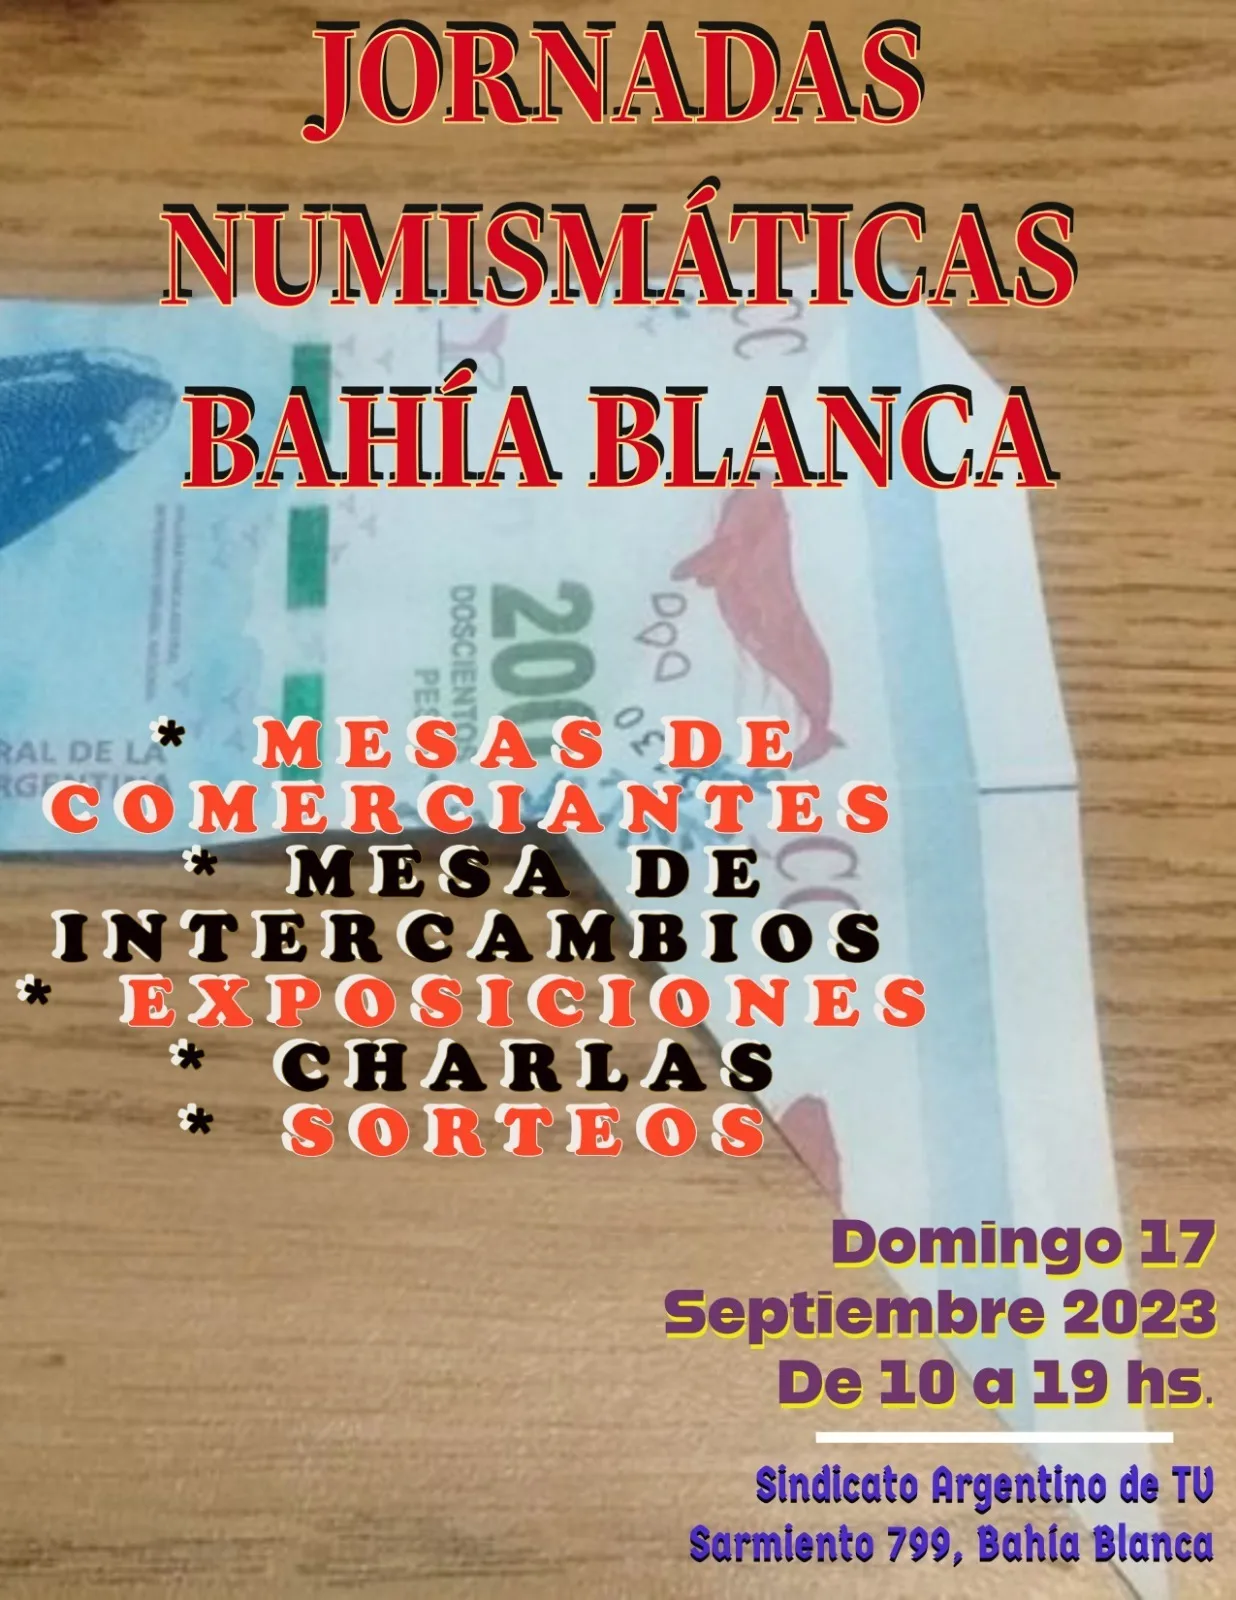 Jornadas Numismáticas Bahía Blanca